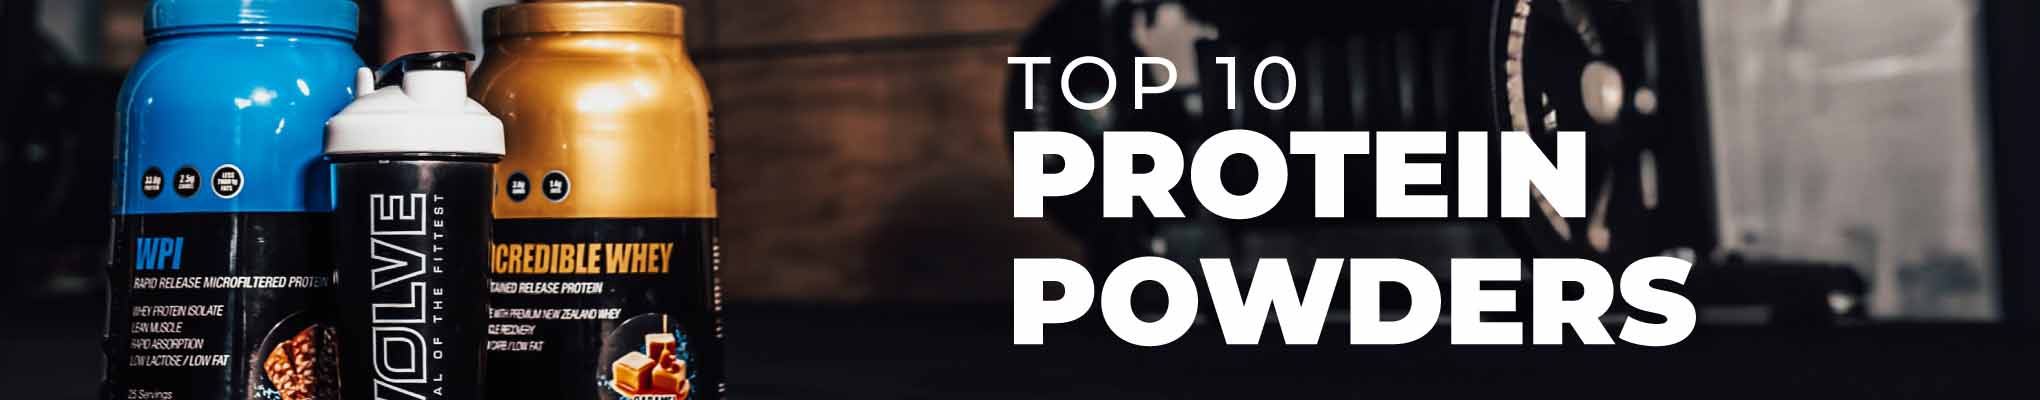 Top 10 Protein Powder Web Banner